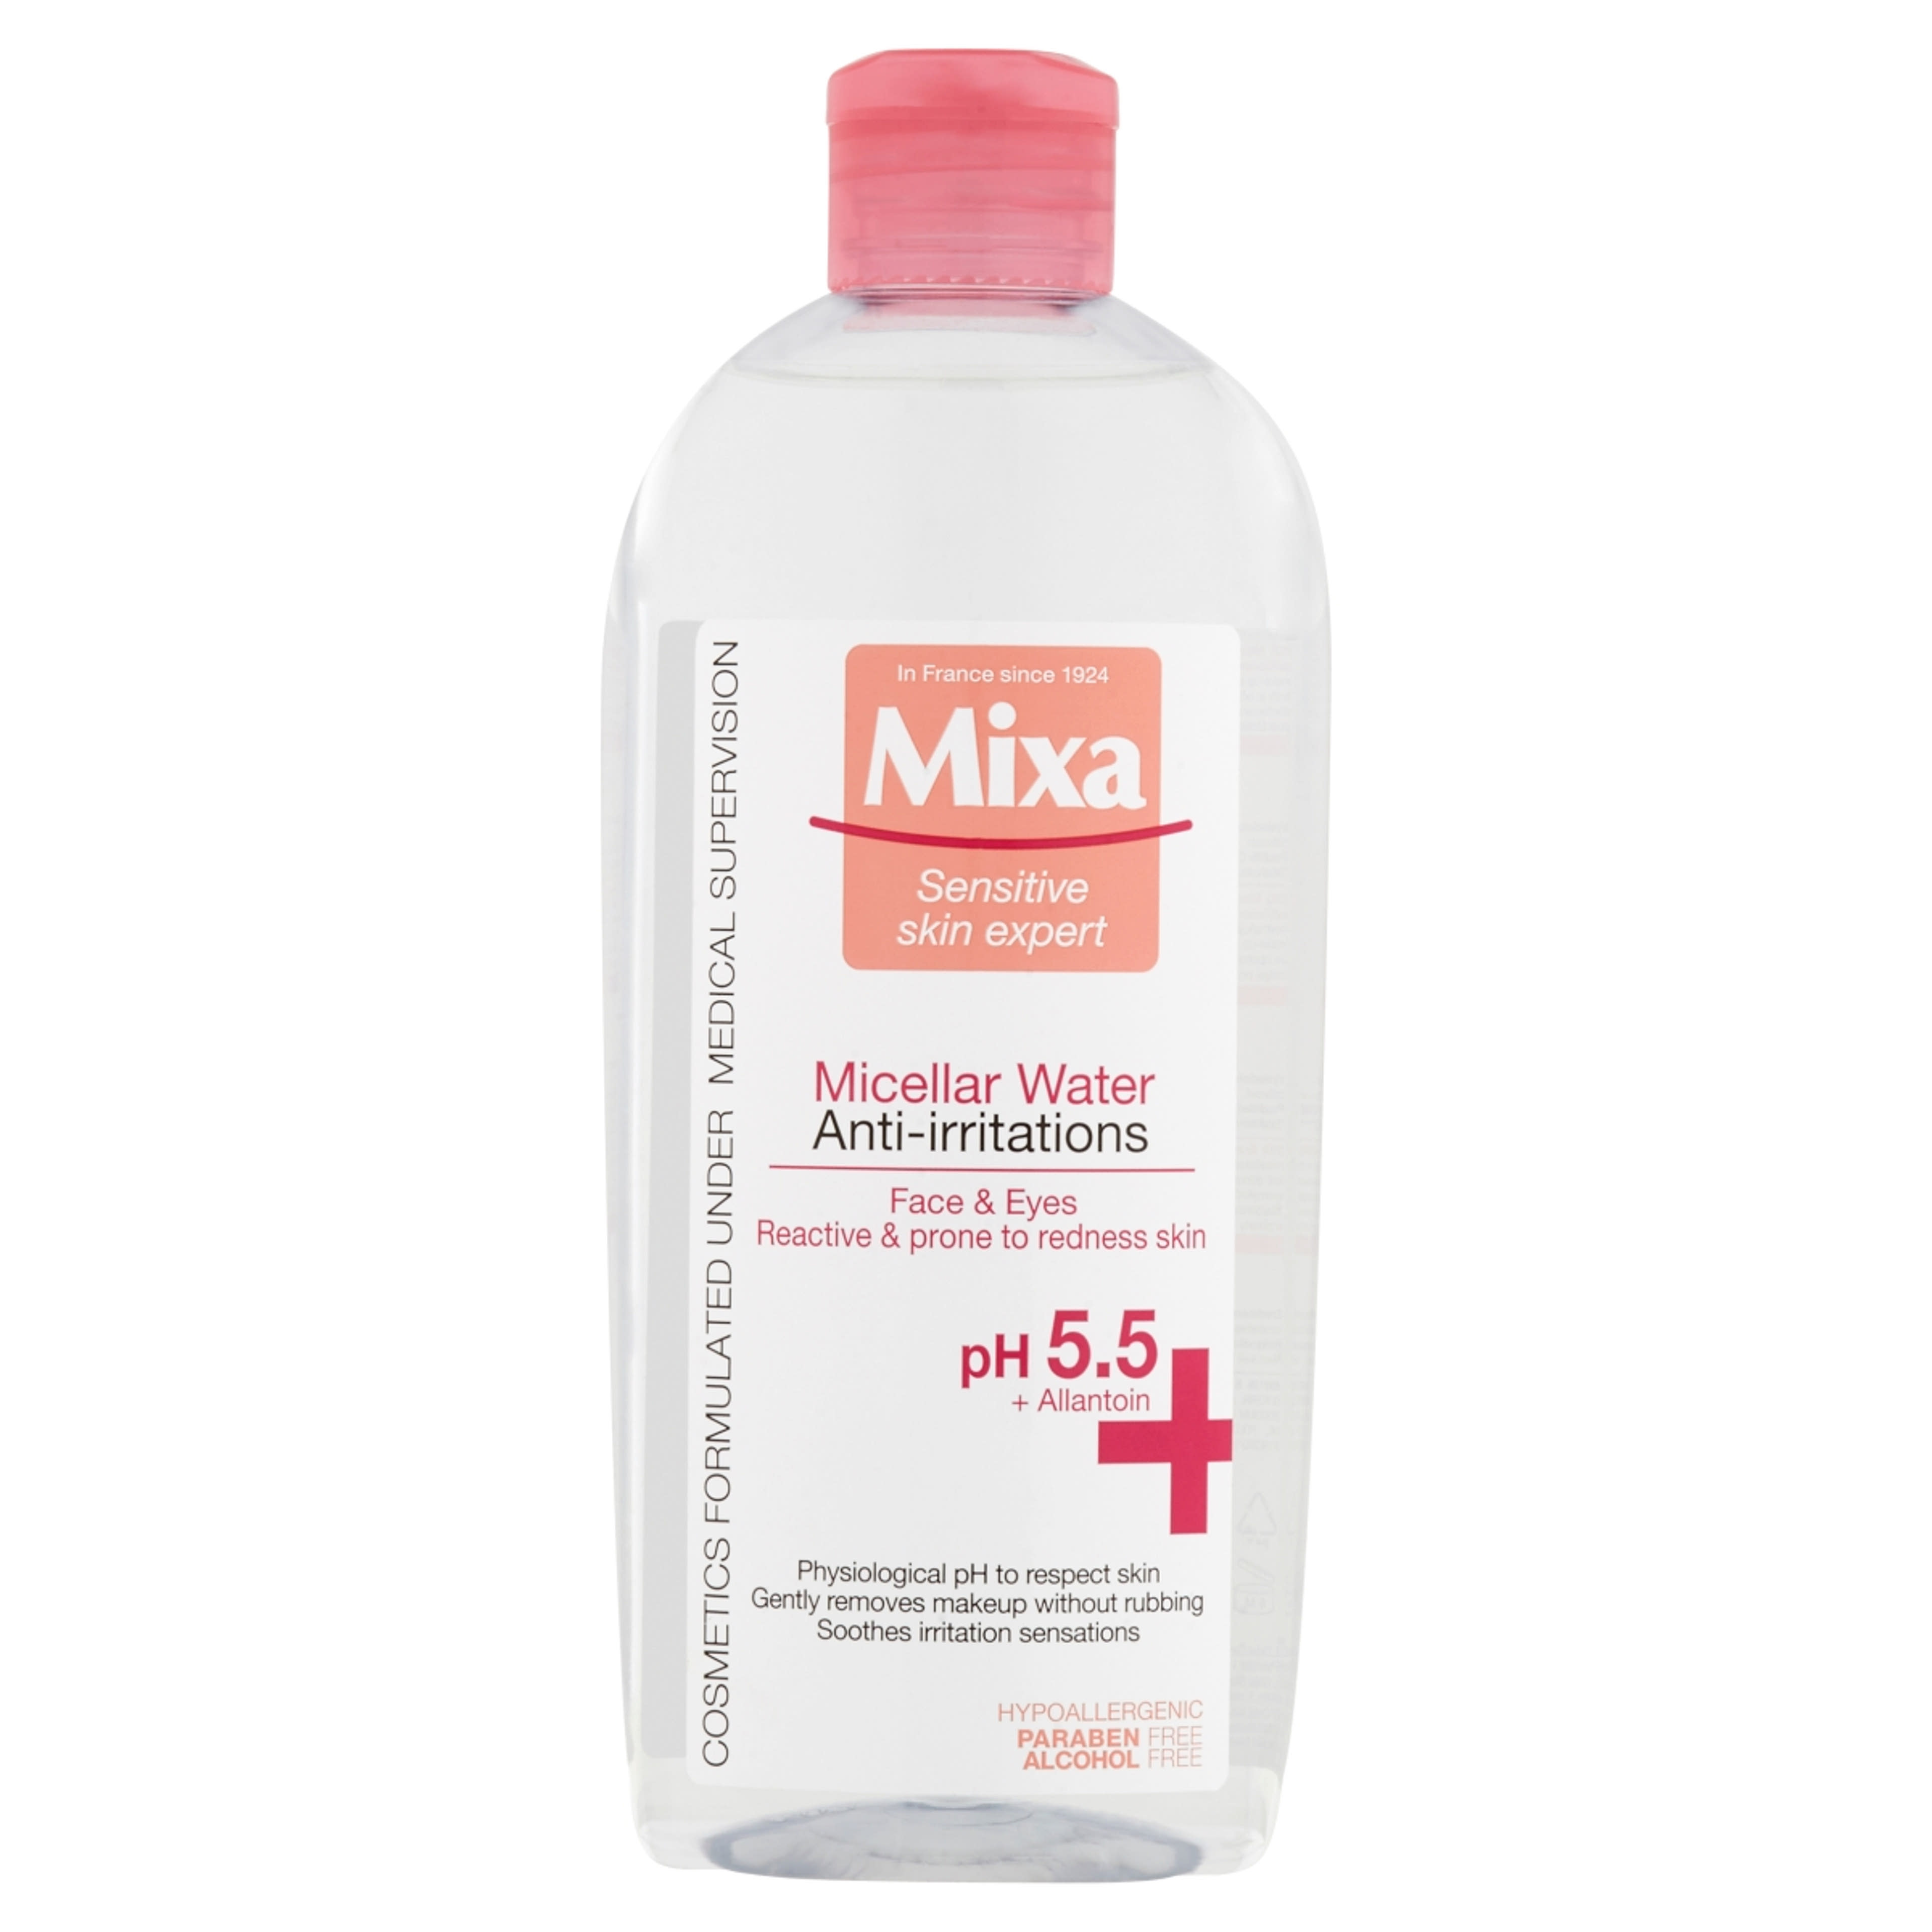 Mixa Anti-Redness micellás víz érzékeny, bőrpírra hajlamos bőrre  - 400 ml